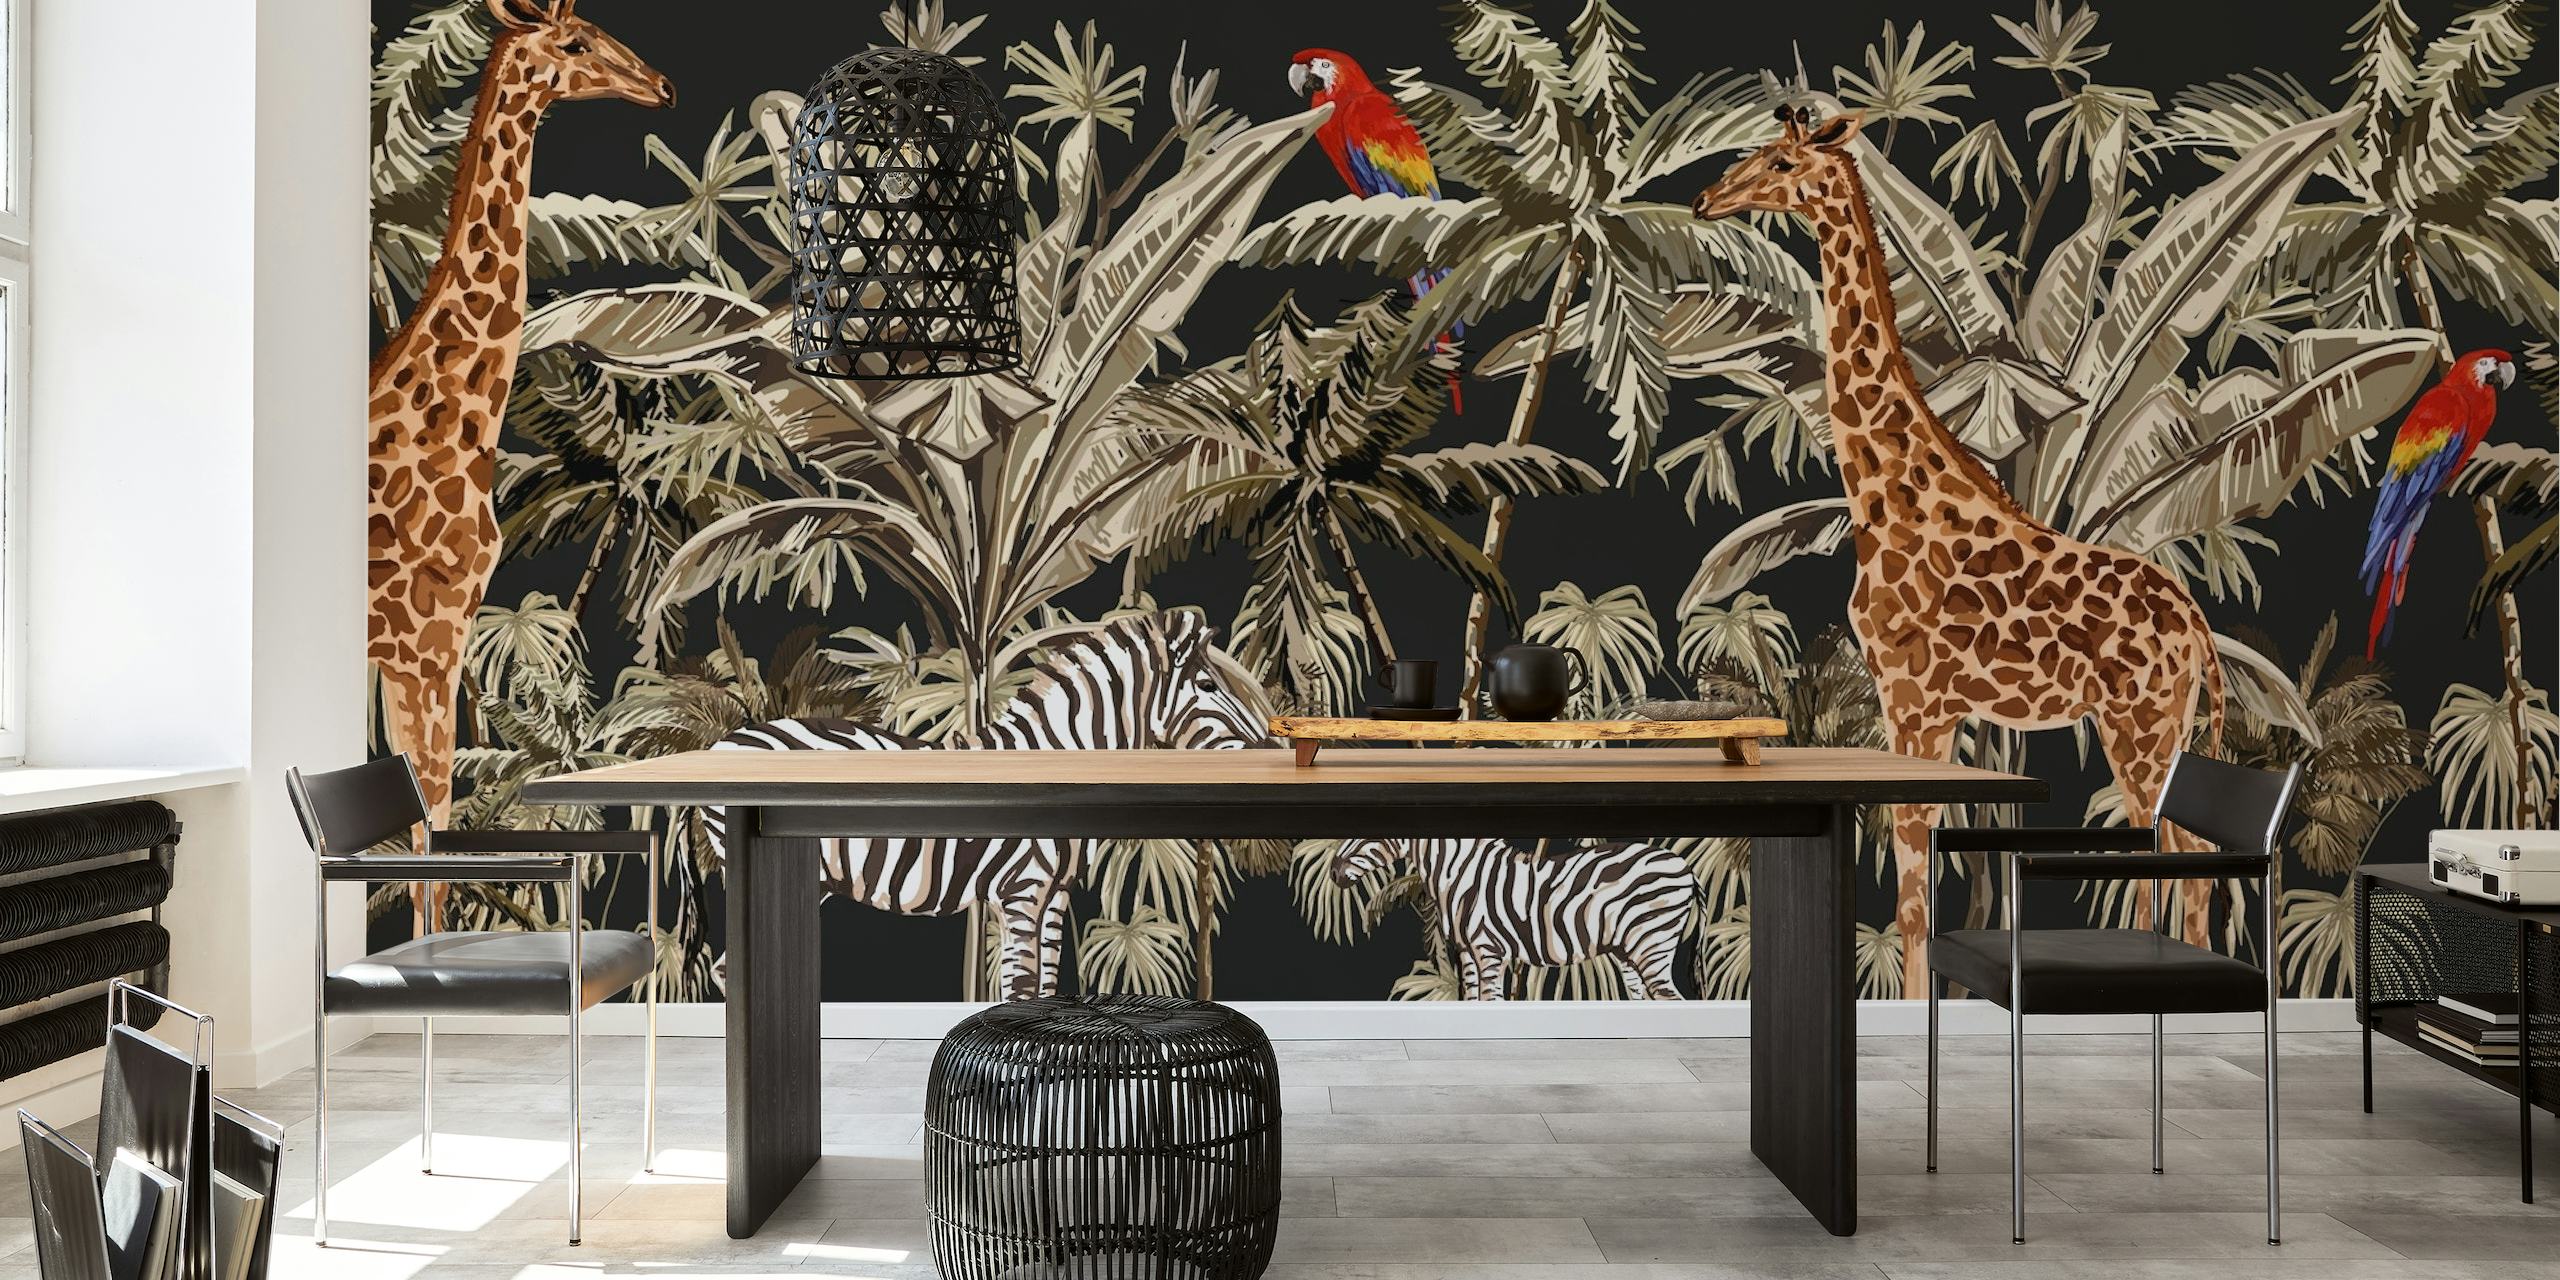 Fotobehang van giraffen en zebra's tussen palmbomen op een zwarte achtergrond